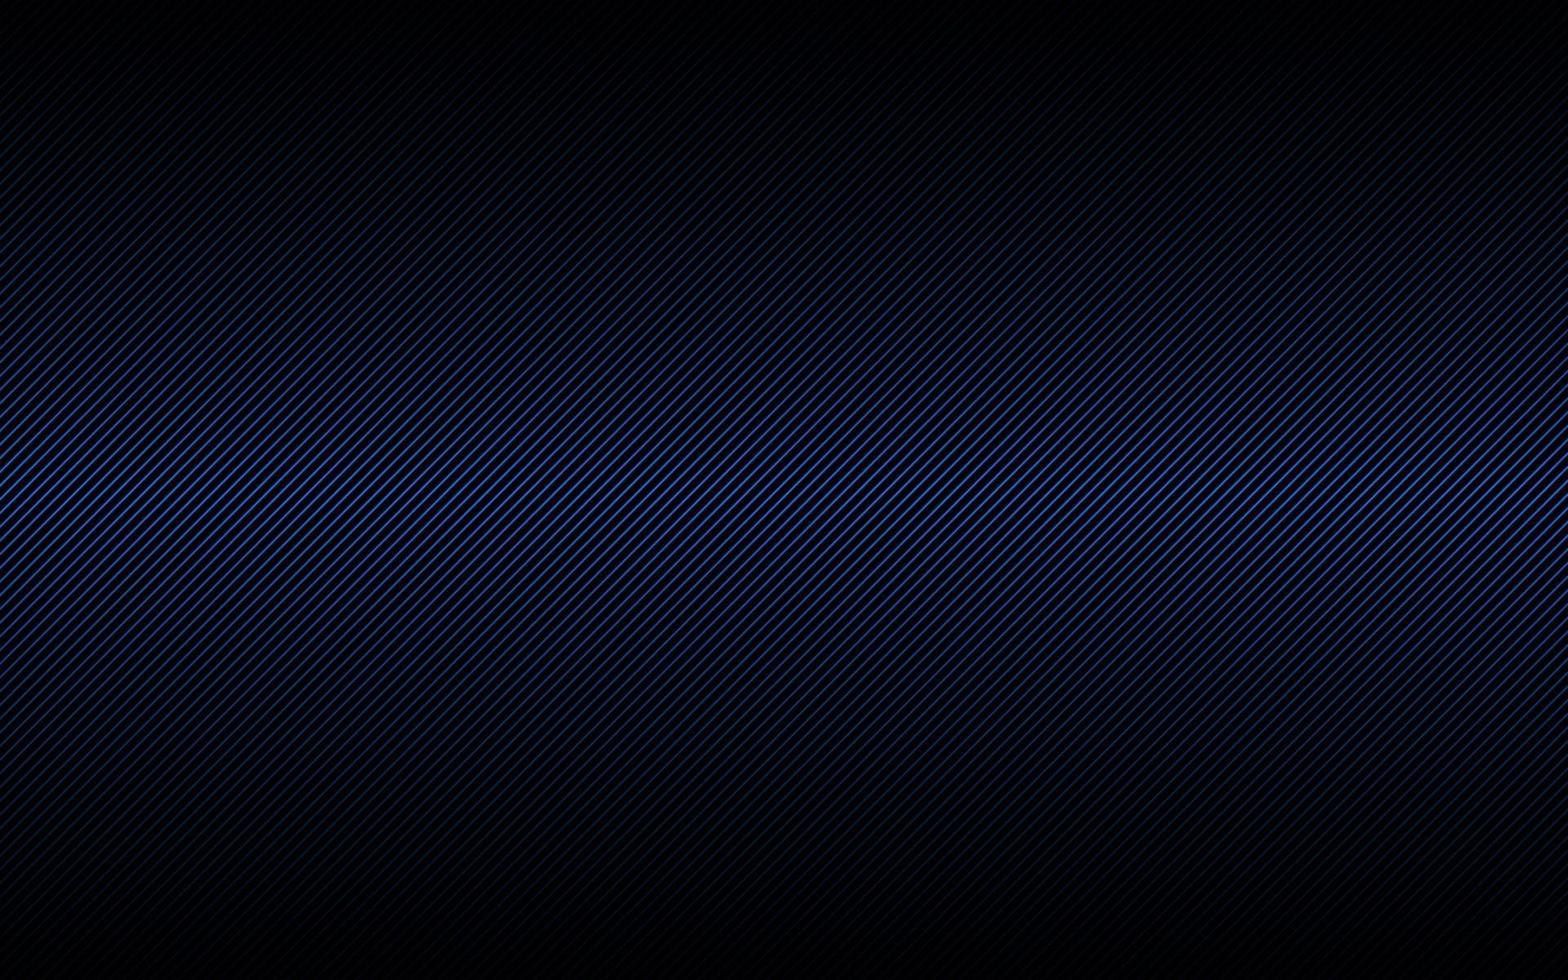 fond abstrait sombre avec des lignes obliques bleues et noires. motif rayé. lignes et bandes parallèles. fibre diagonale. illustration vectorielle vecteur